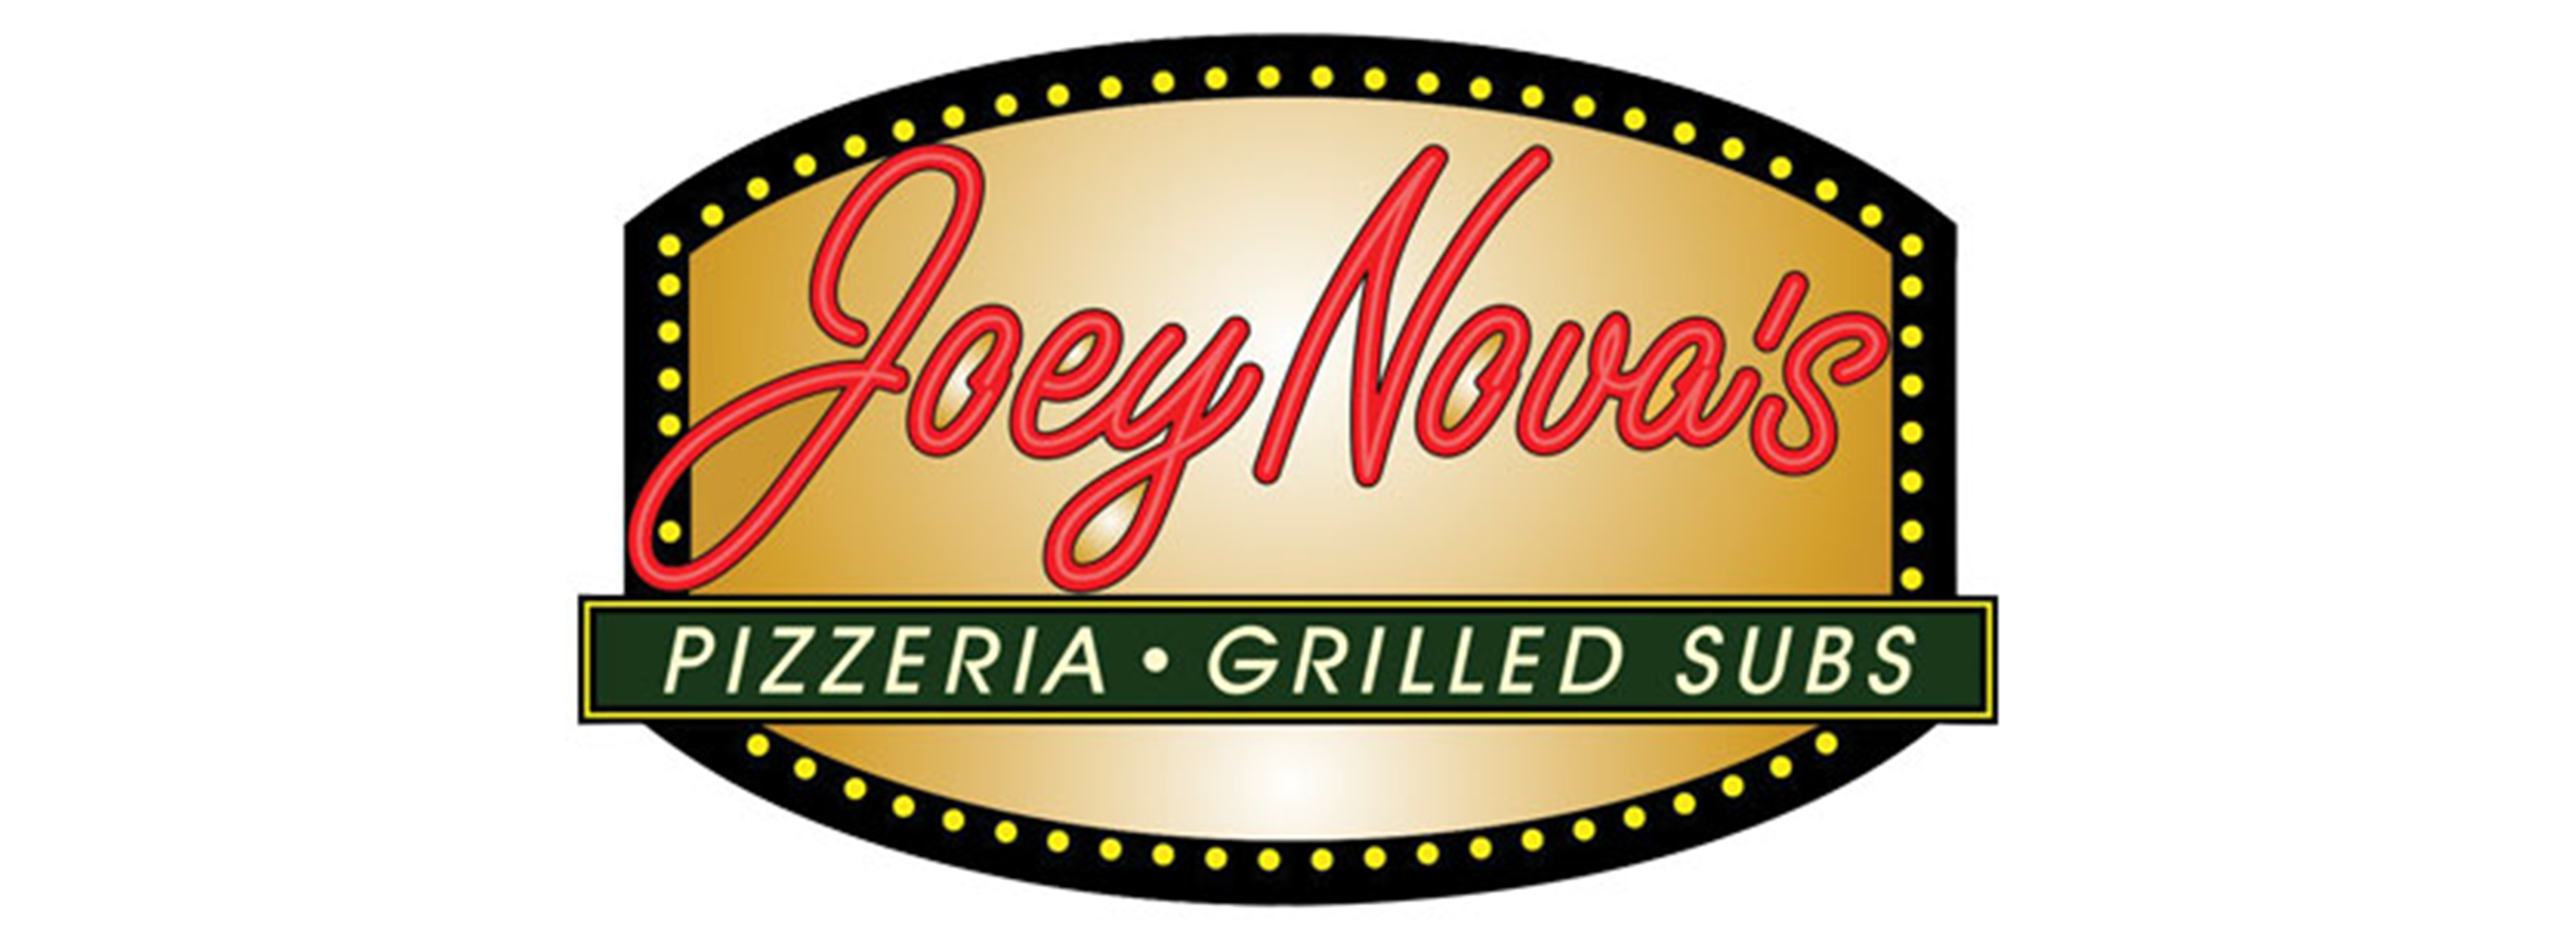 Joey Nova's